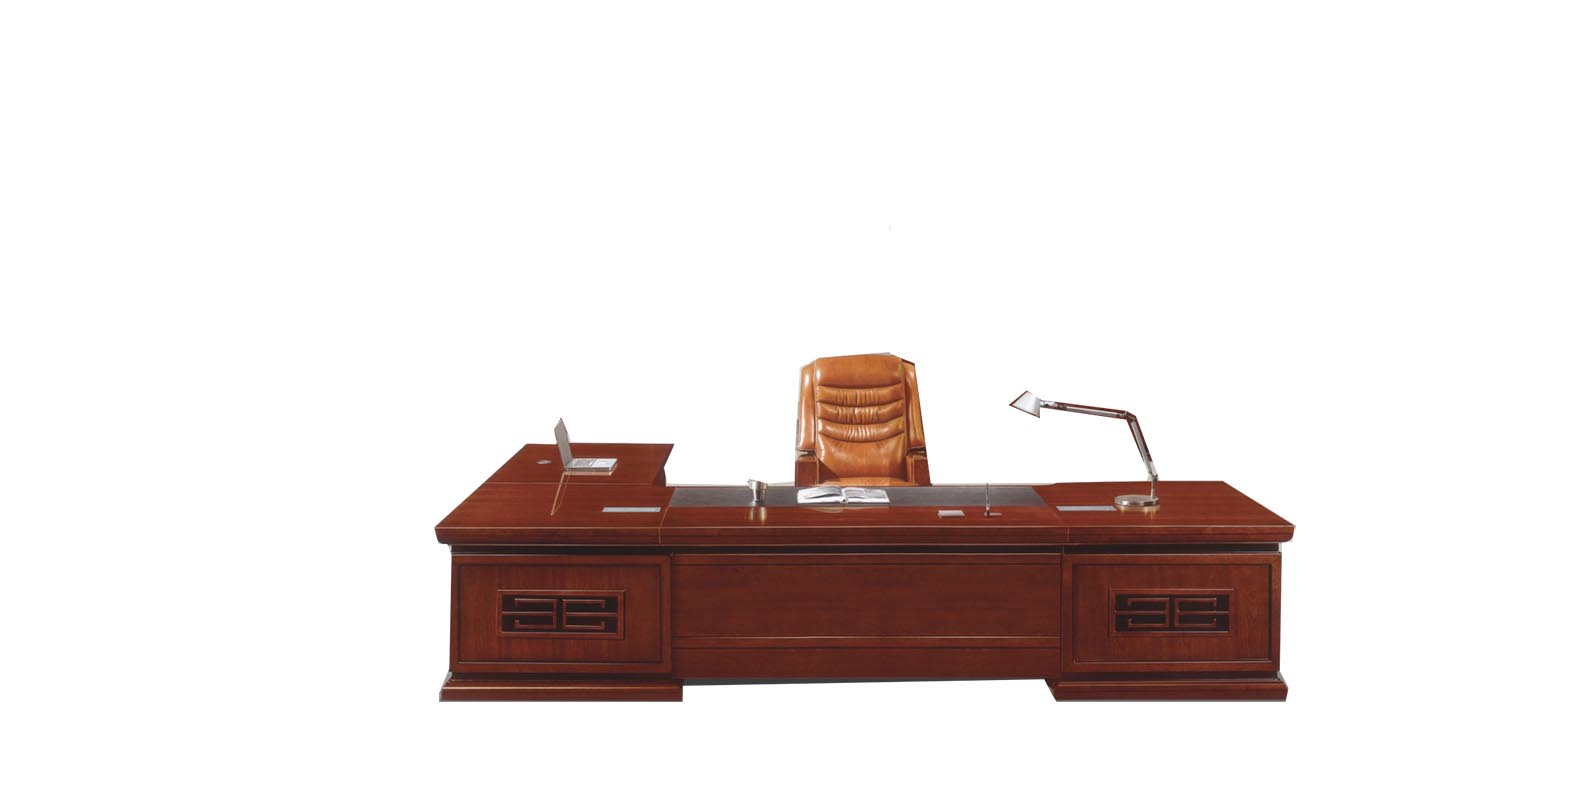 标灿办公家具 现代中式实木办公桌 油漆漆面办公桌电脑桌 大班台 老板桌 可定制其他